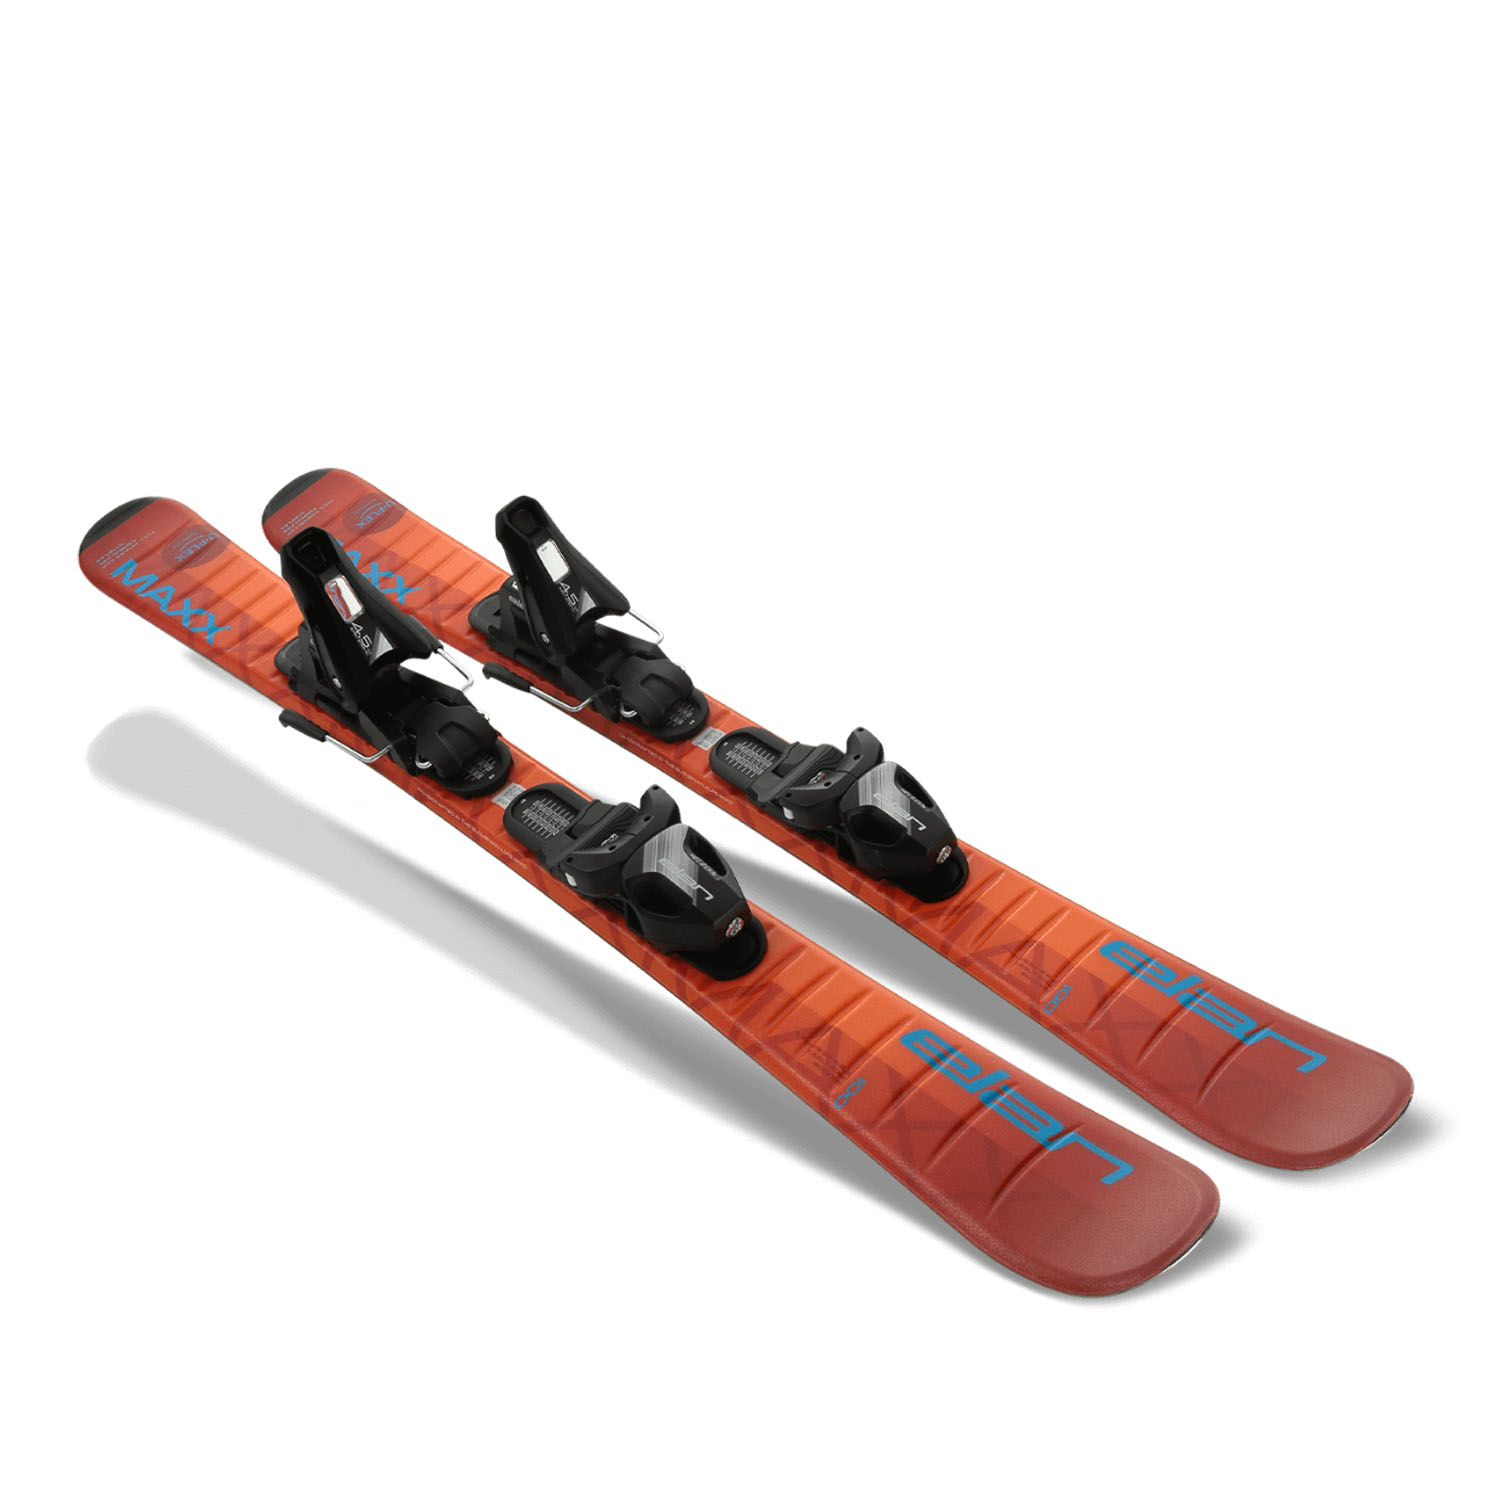 Горные лыжи с креплениями ELAN Maxx Orange Jrs 70-90 + El 4.5 Shift